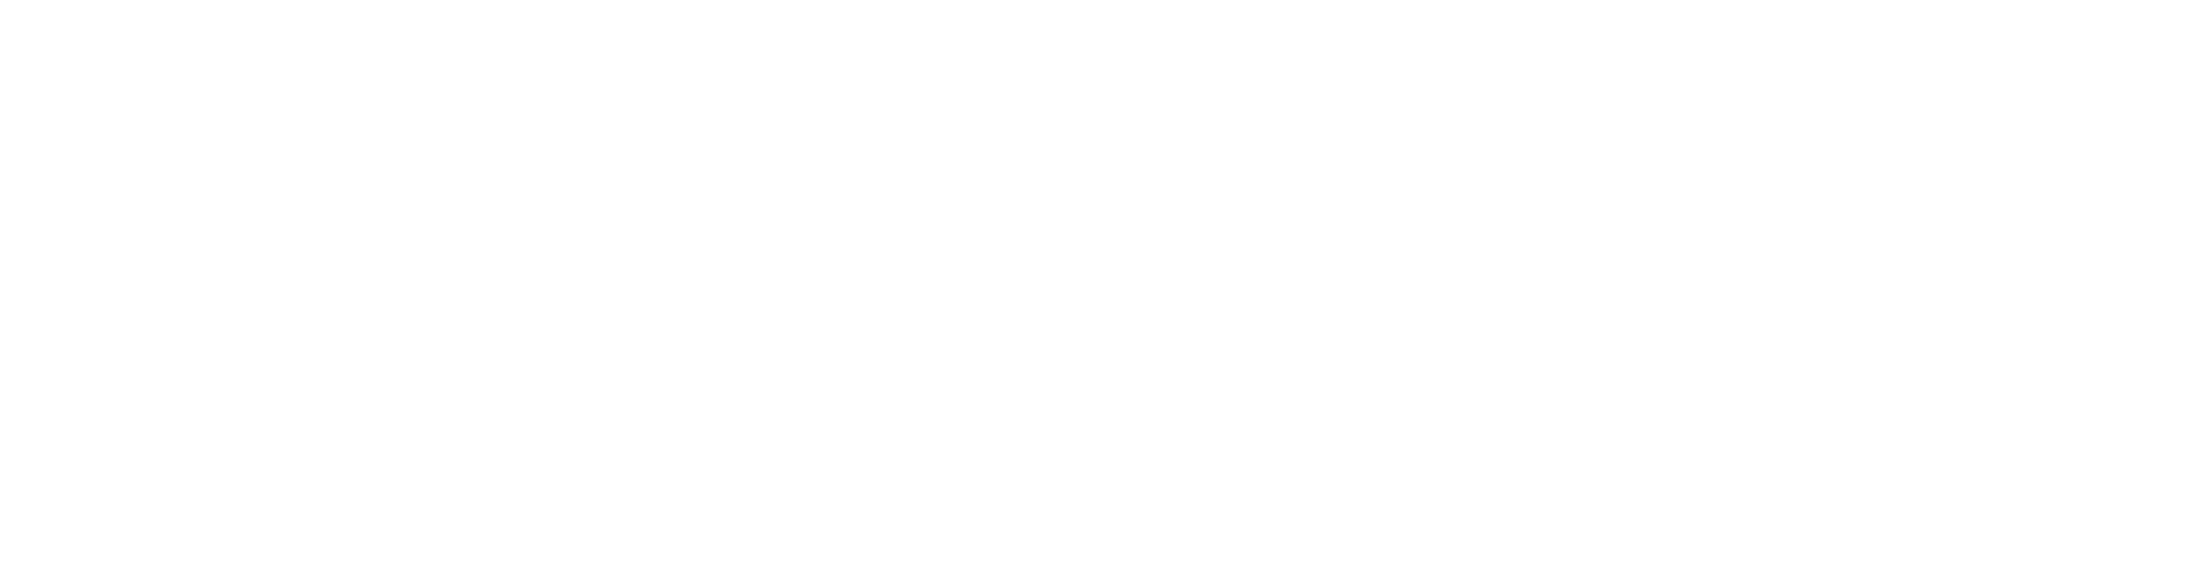 Amityville Horror House logo